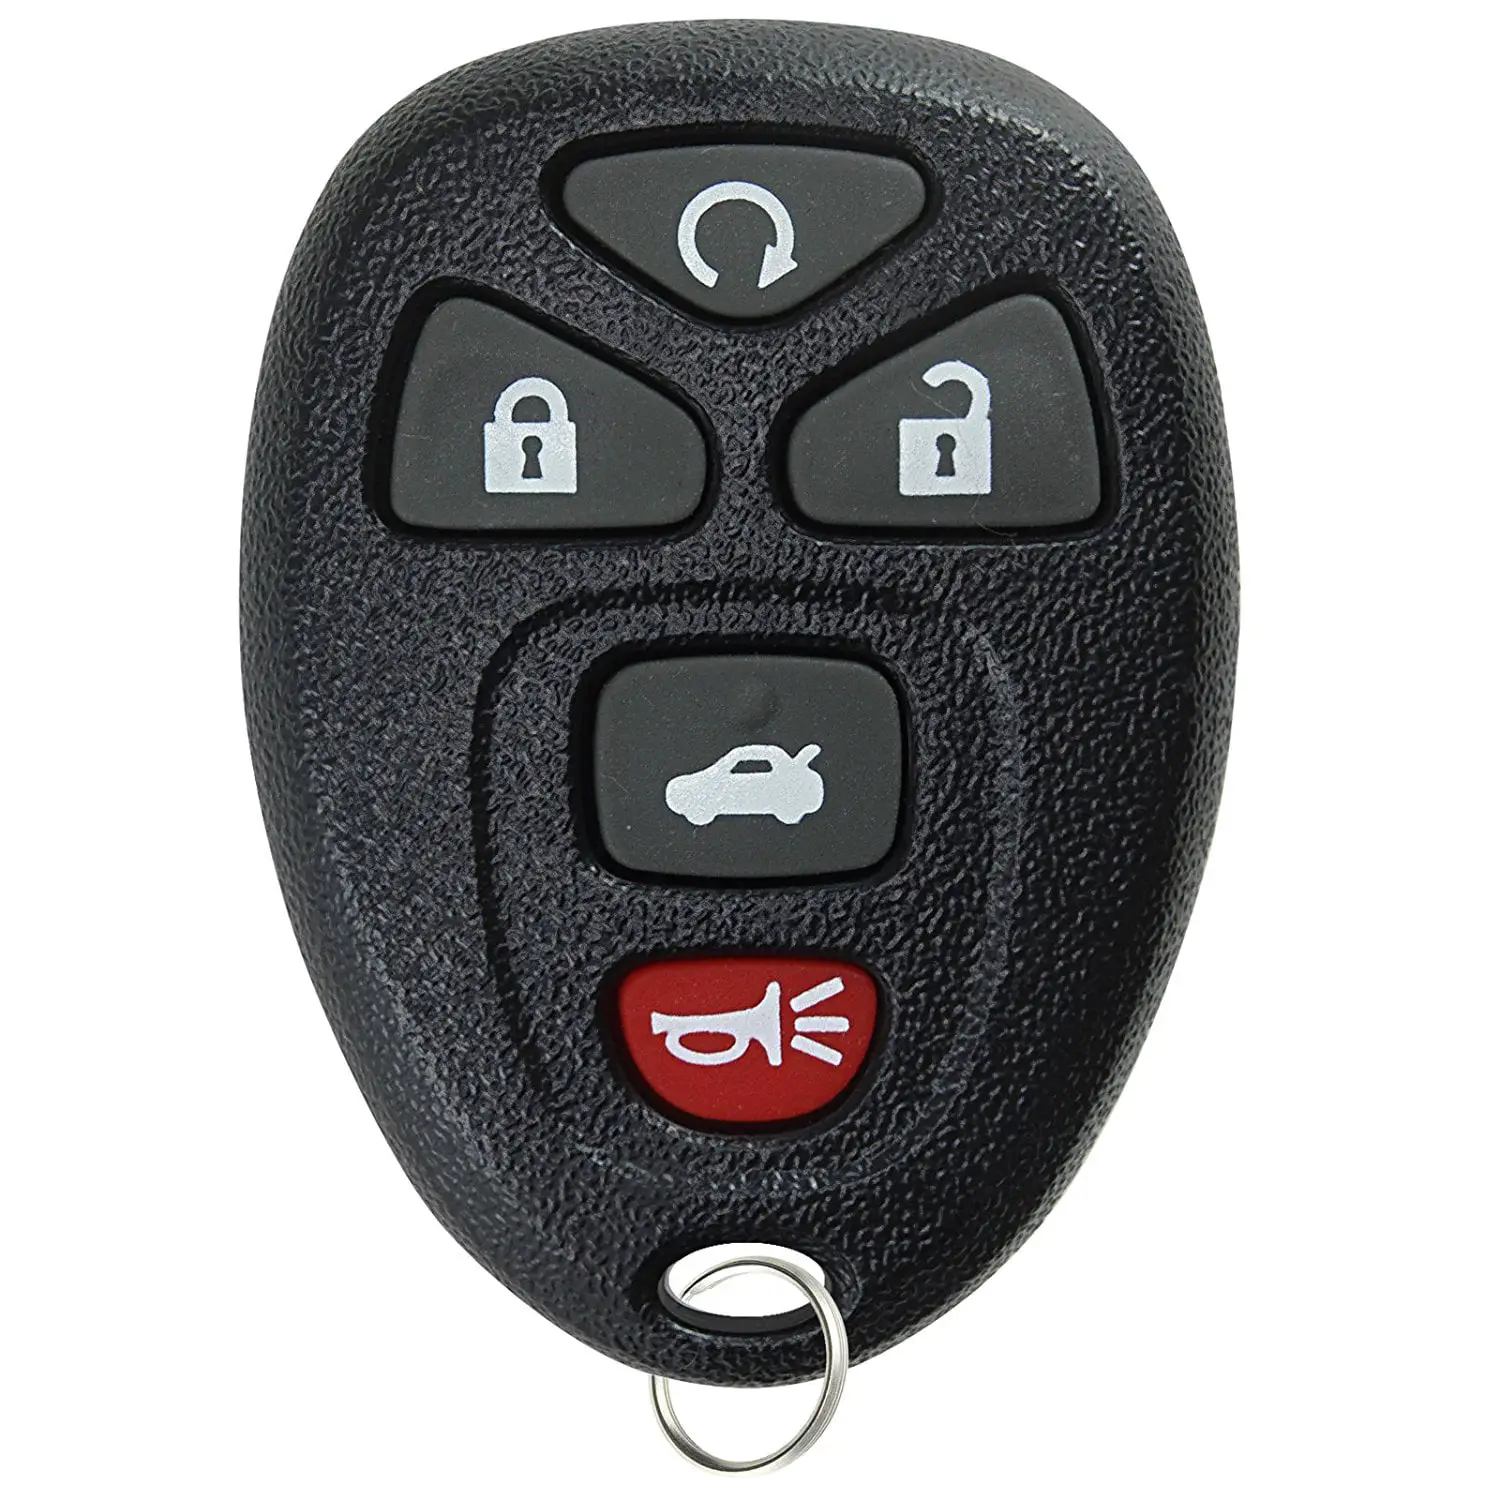 KeylessOption Keyless Entry Remote Start Control Car Key Fob ...